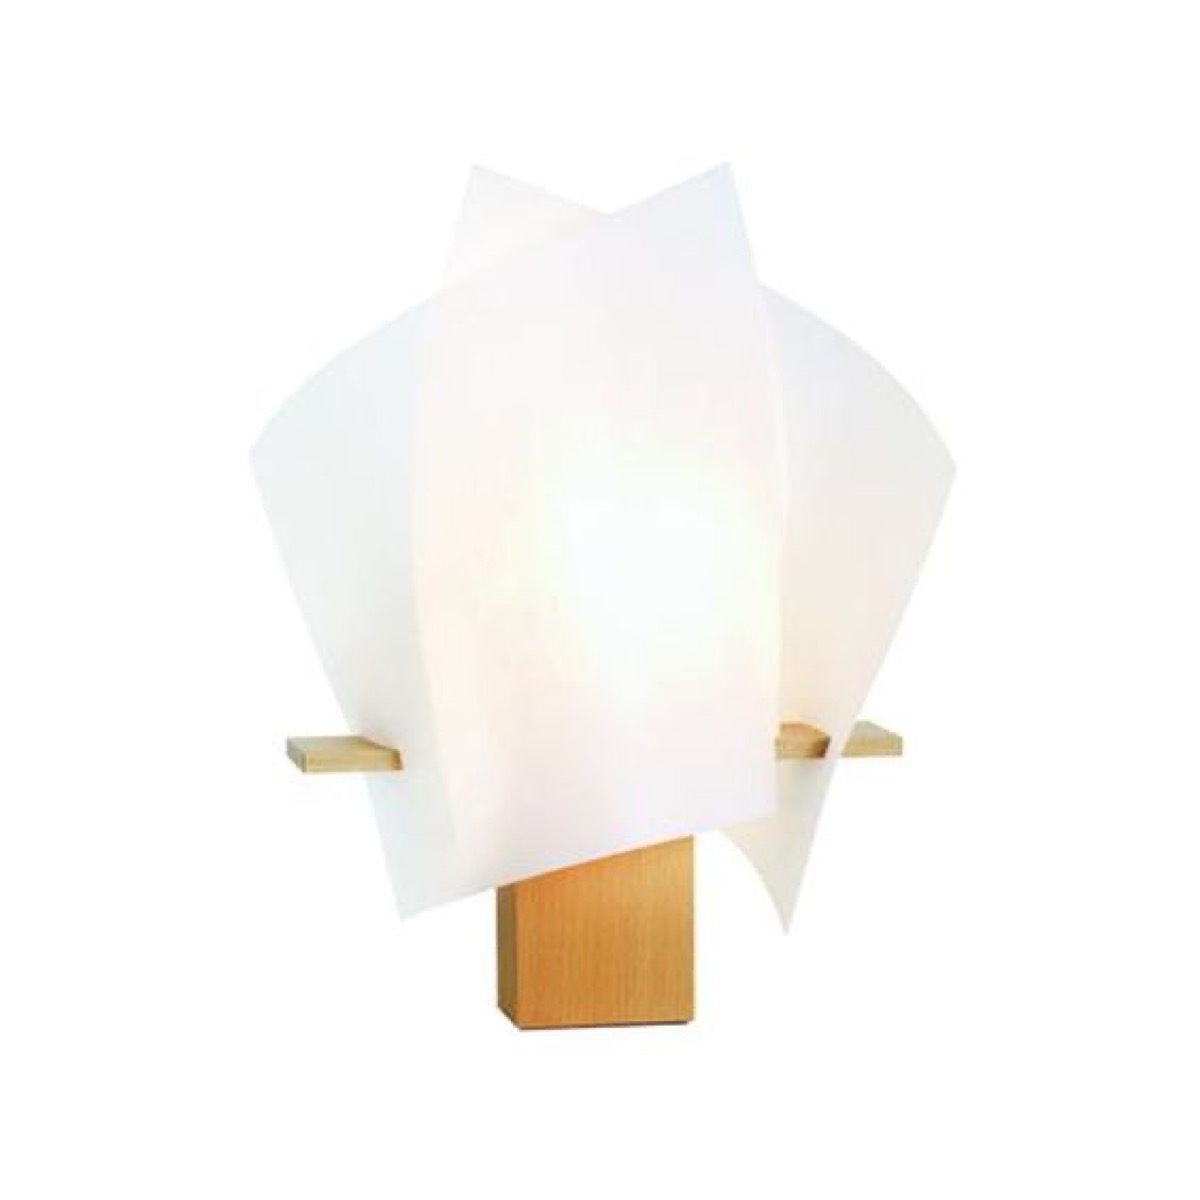 DOMUS - 7334.3508 - PLAN B Tischleuchte / PLAN B Table lamp